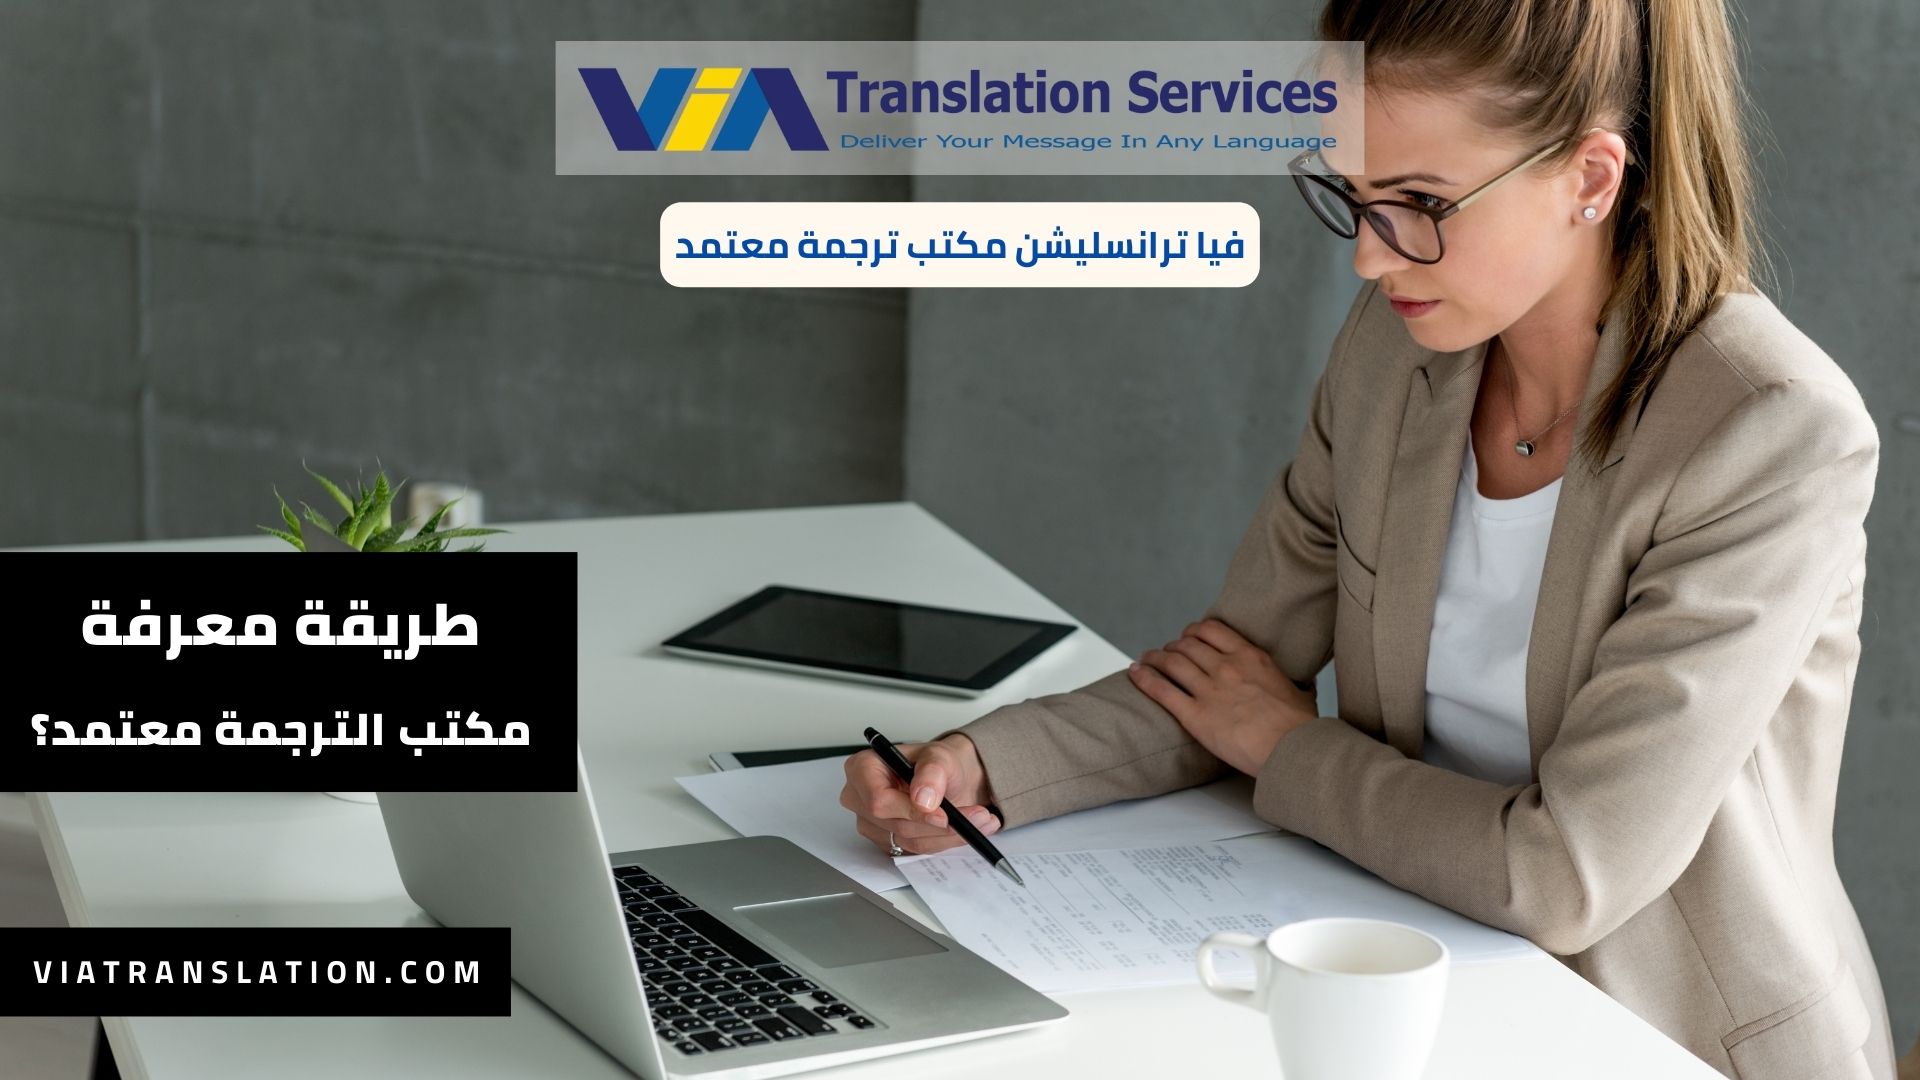 كيف اعرف ان مكتب الترجمة معتمد؟ (2)